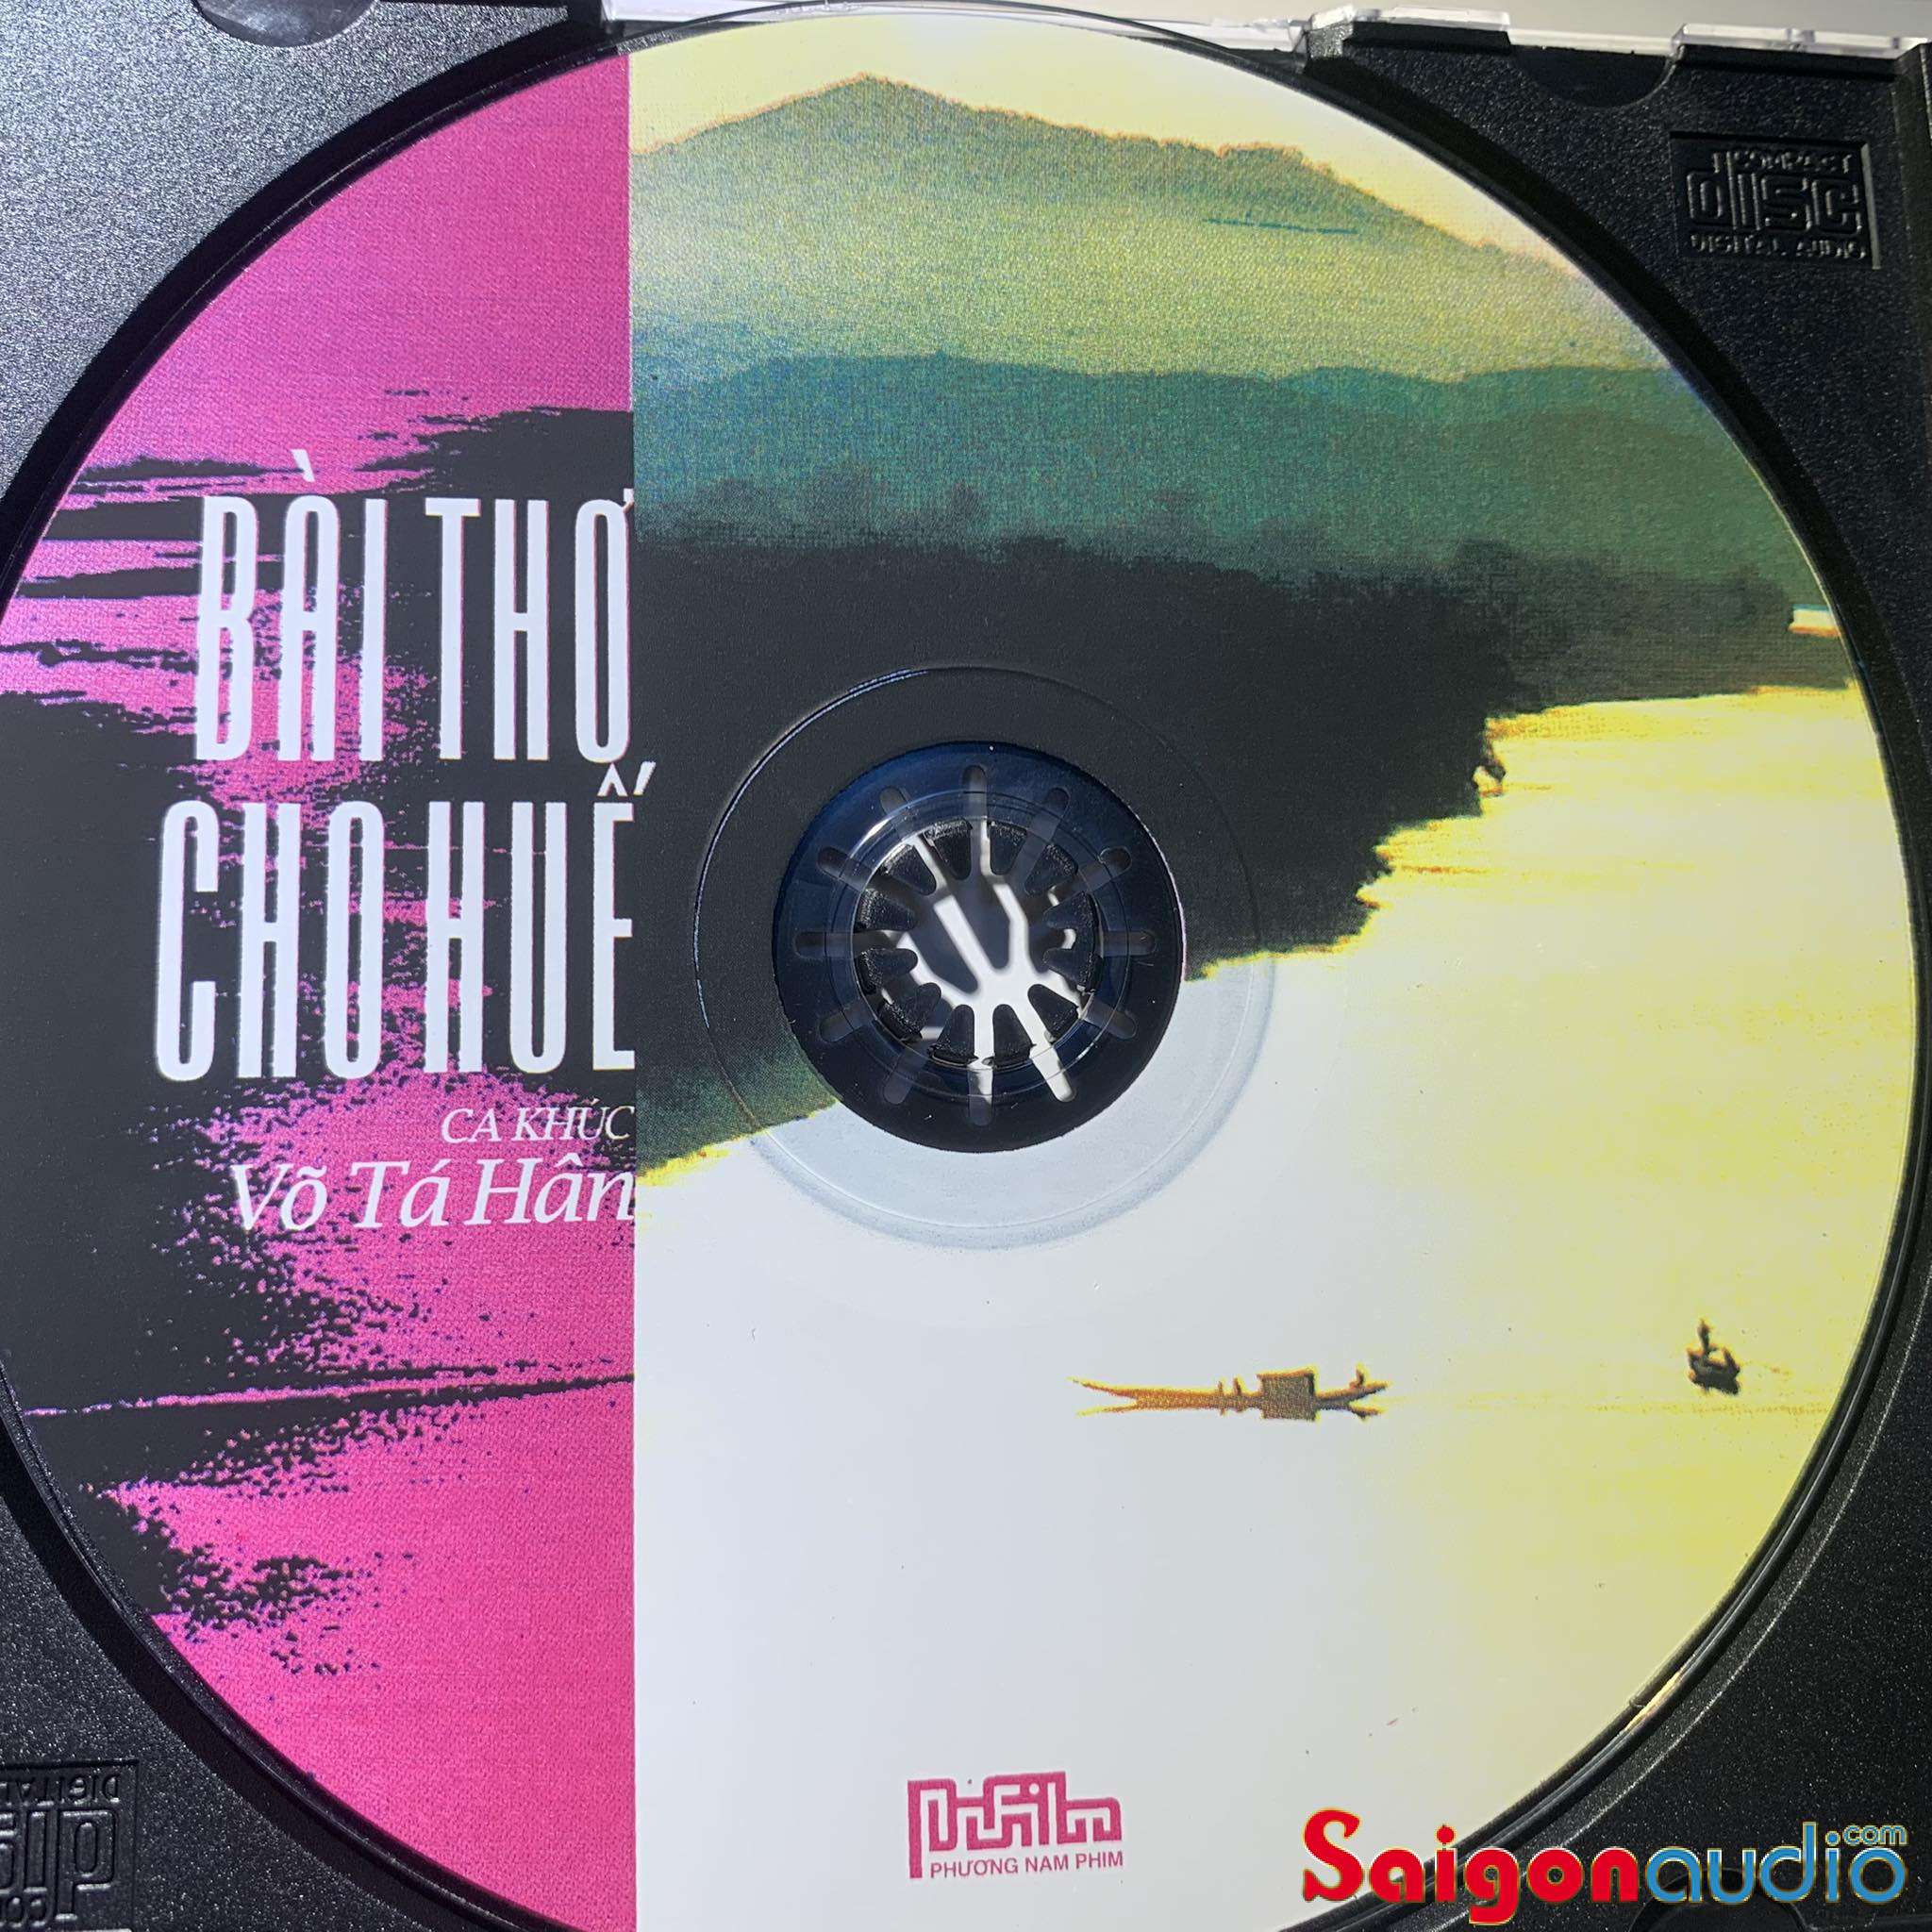 Đĩa CD gốc Bài Thơ Cho Huế - Ca Khúc Võ Tá Hân (Free ship khi mua 2 đĩa CD cùng hoặc khác loại)